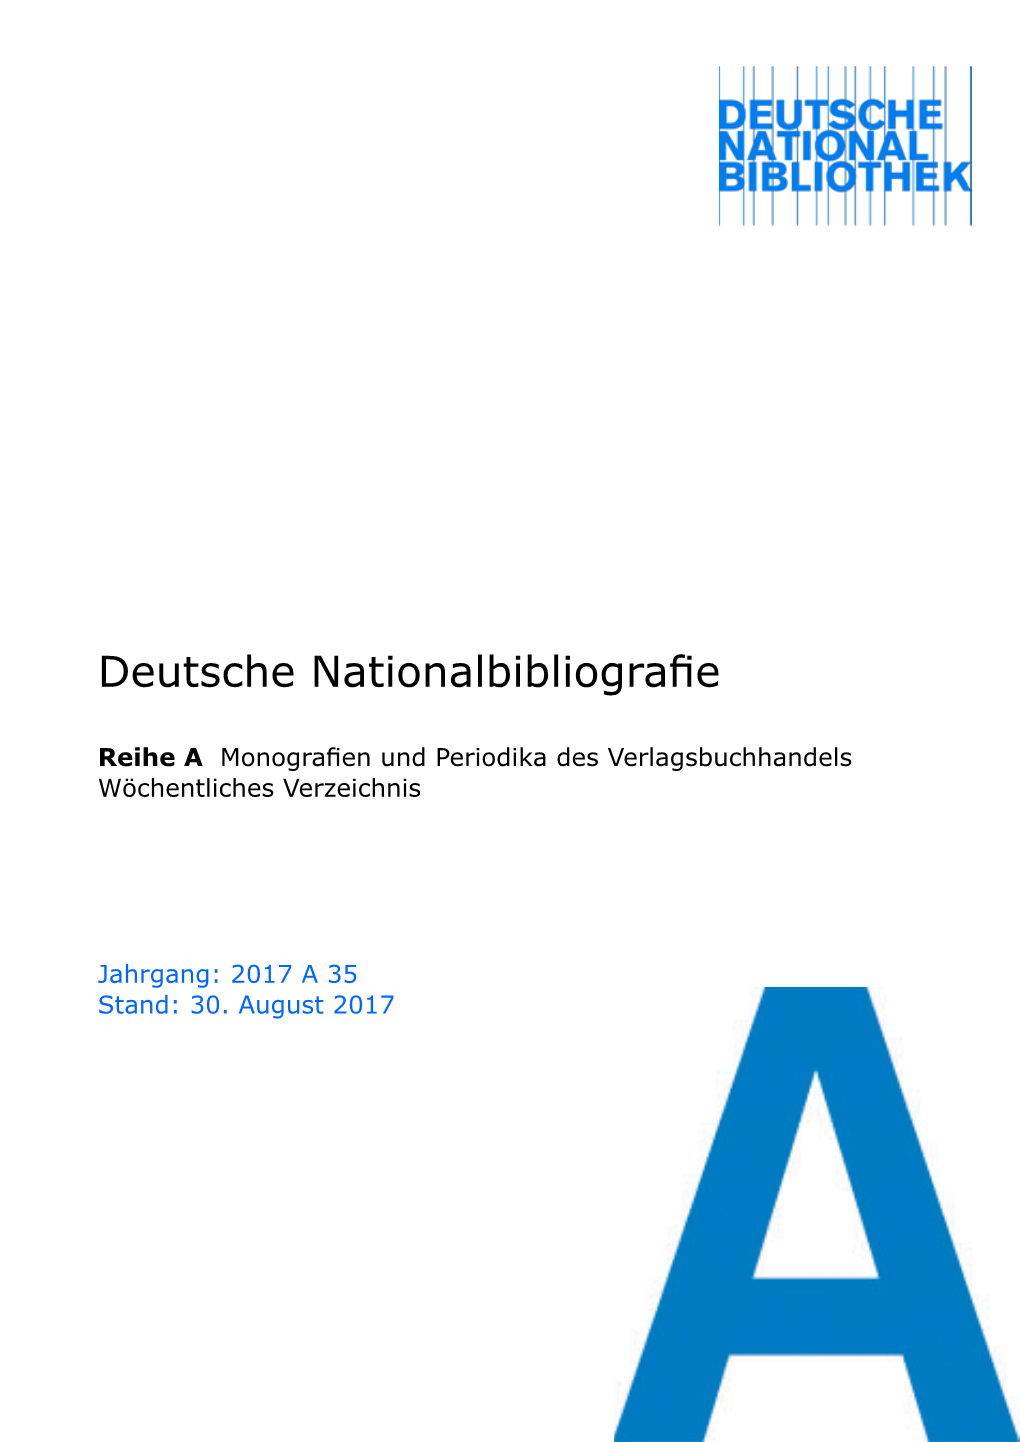 Deutsche Nationalbibliografie 2017 a 35